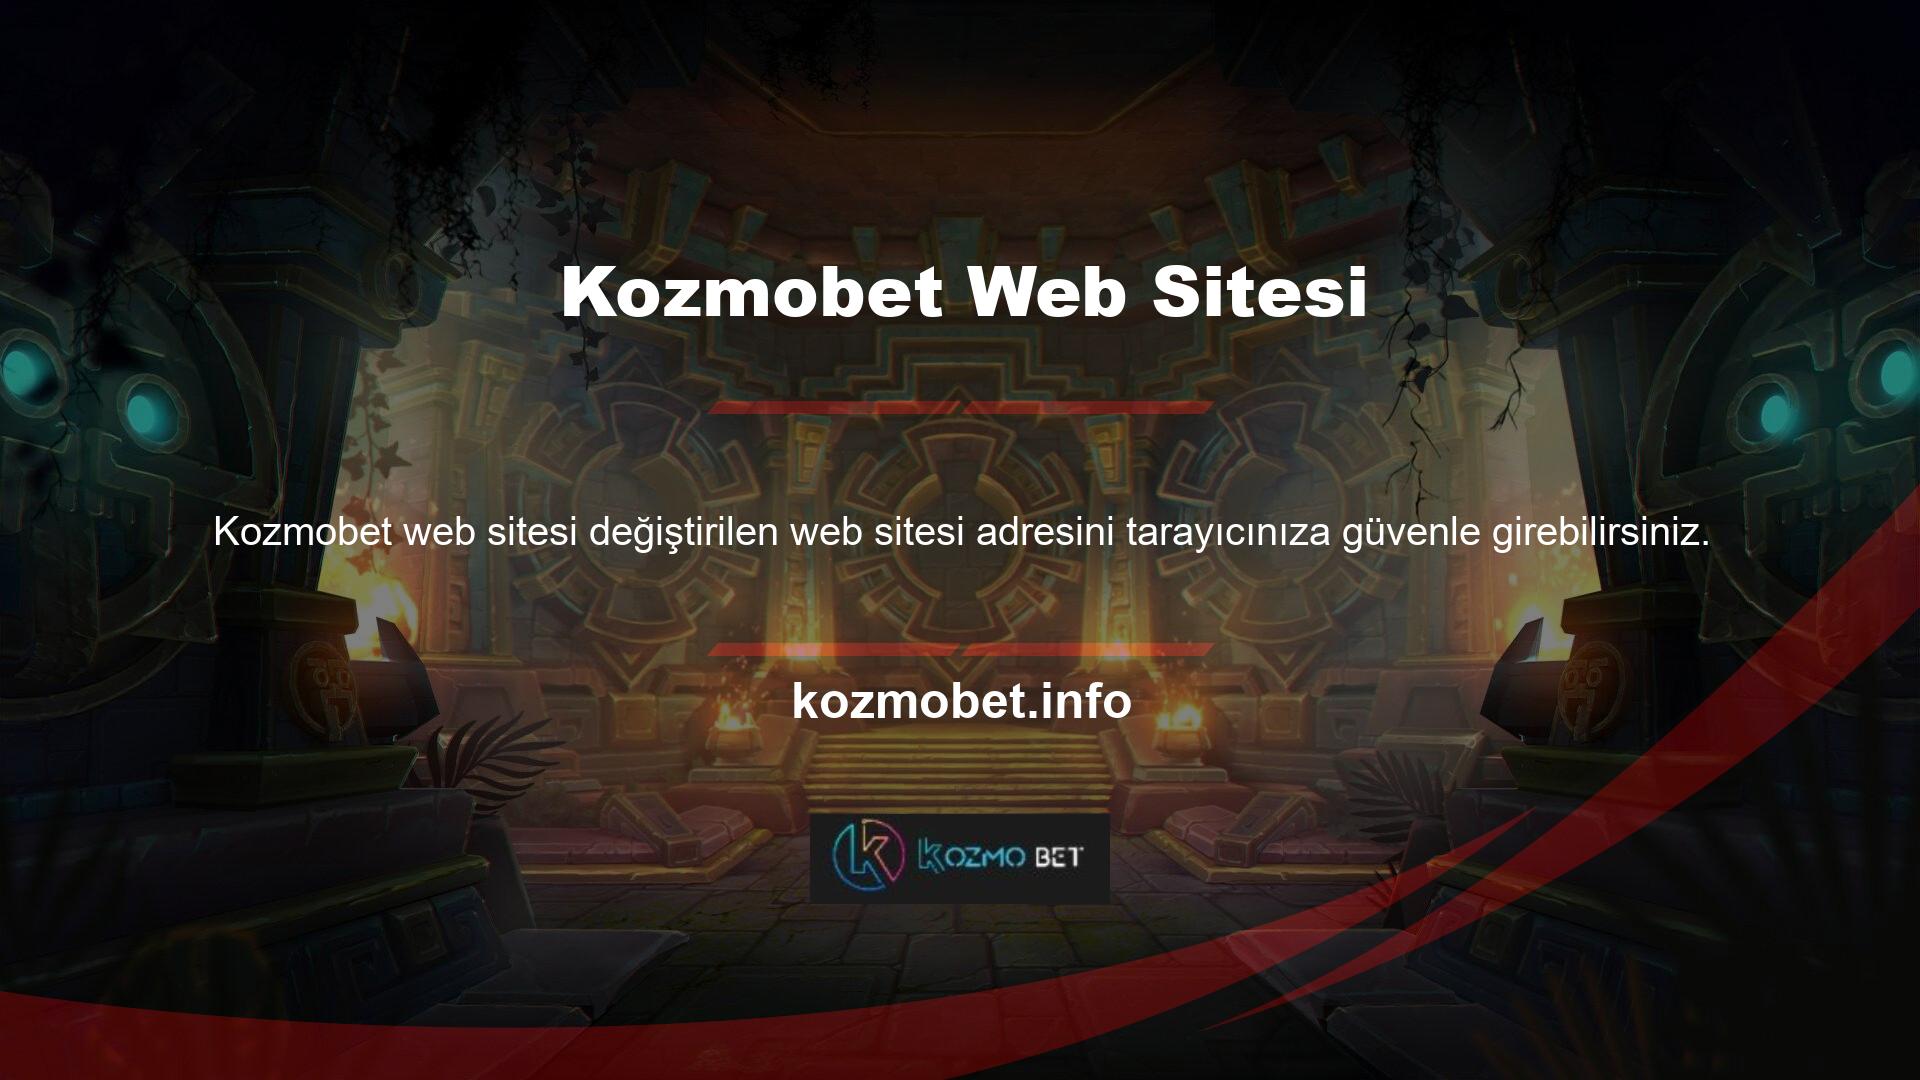 Kozmobet Mobile web sitesi kullanıcı dostudur ve kolaylıkla erişilebilir